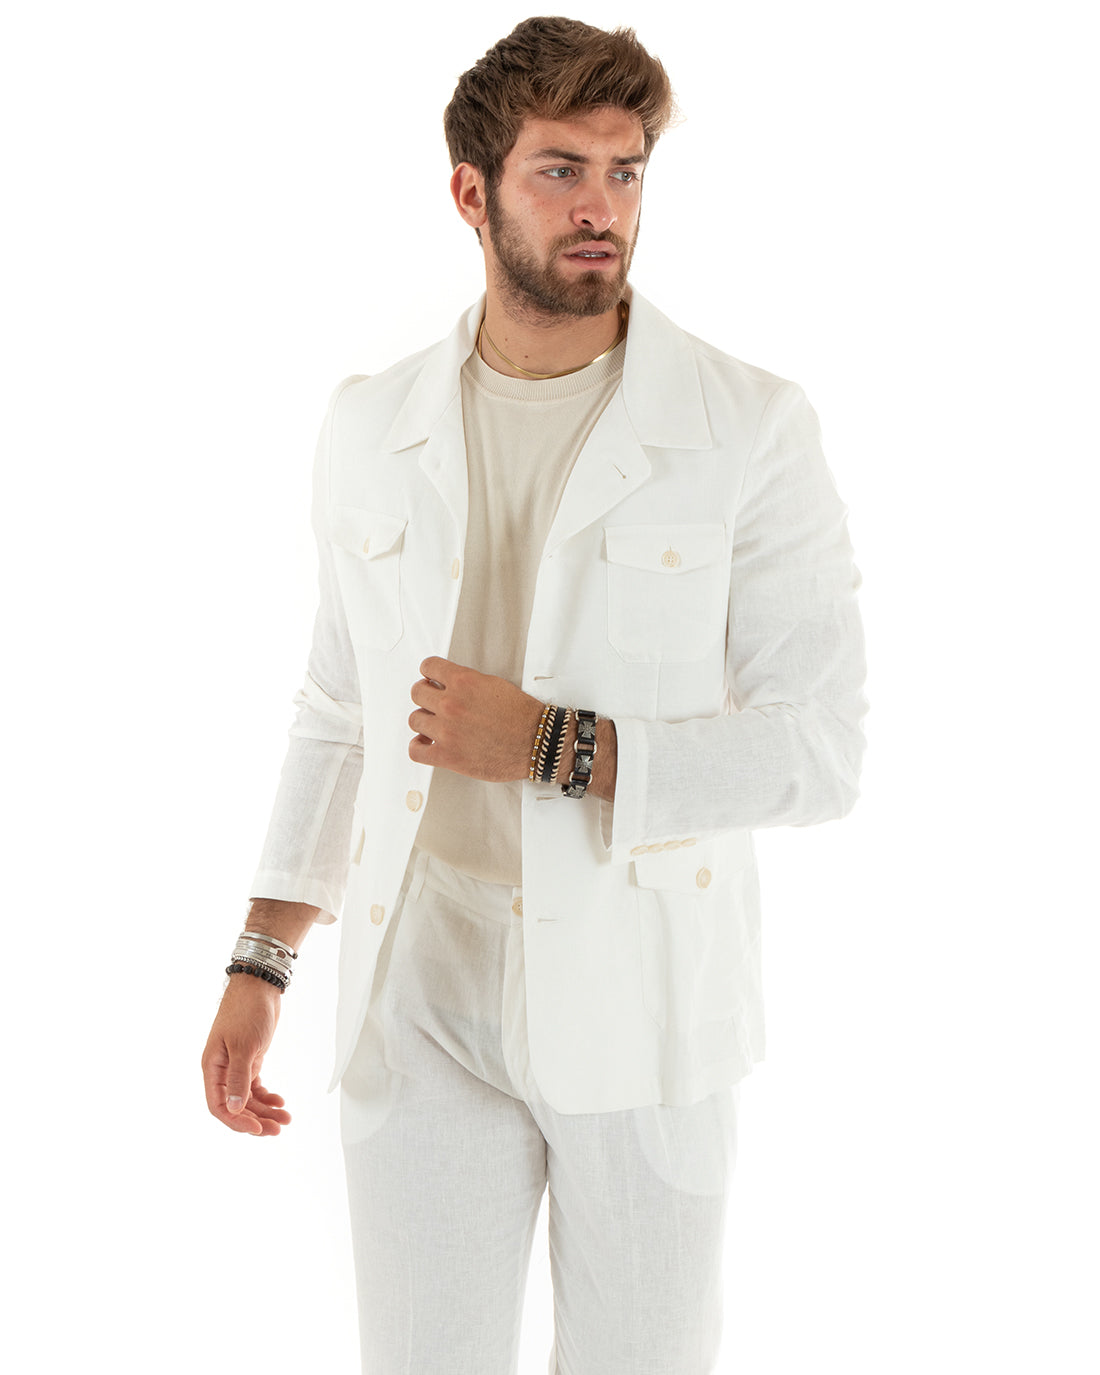 Men's Suit Linen Suit Saharan Jacket Solid Color Casual White Trousers GIOSAL-OU2338A